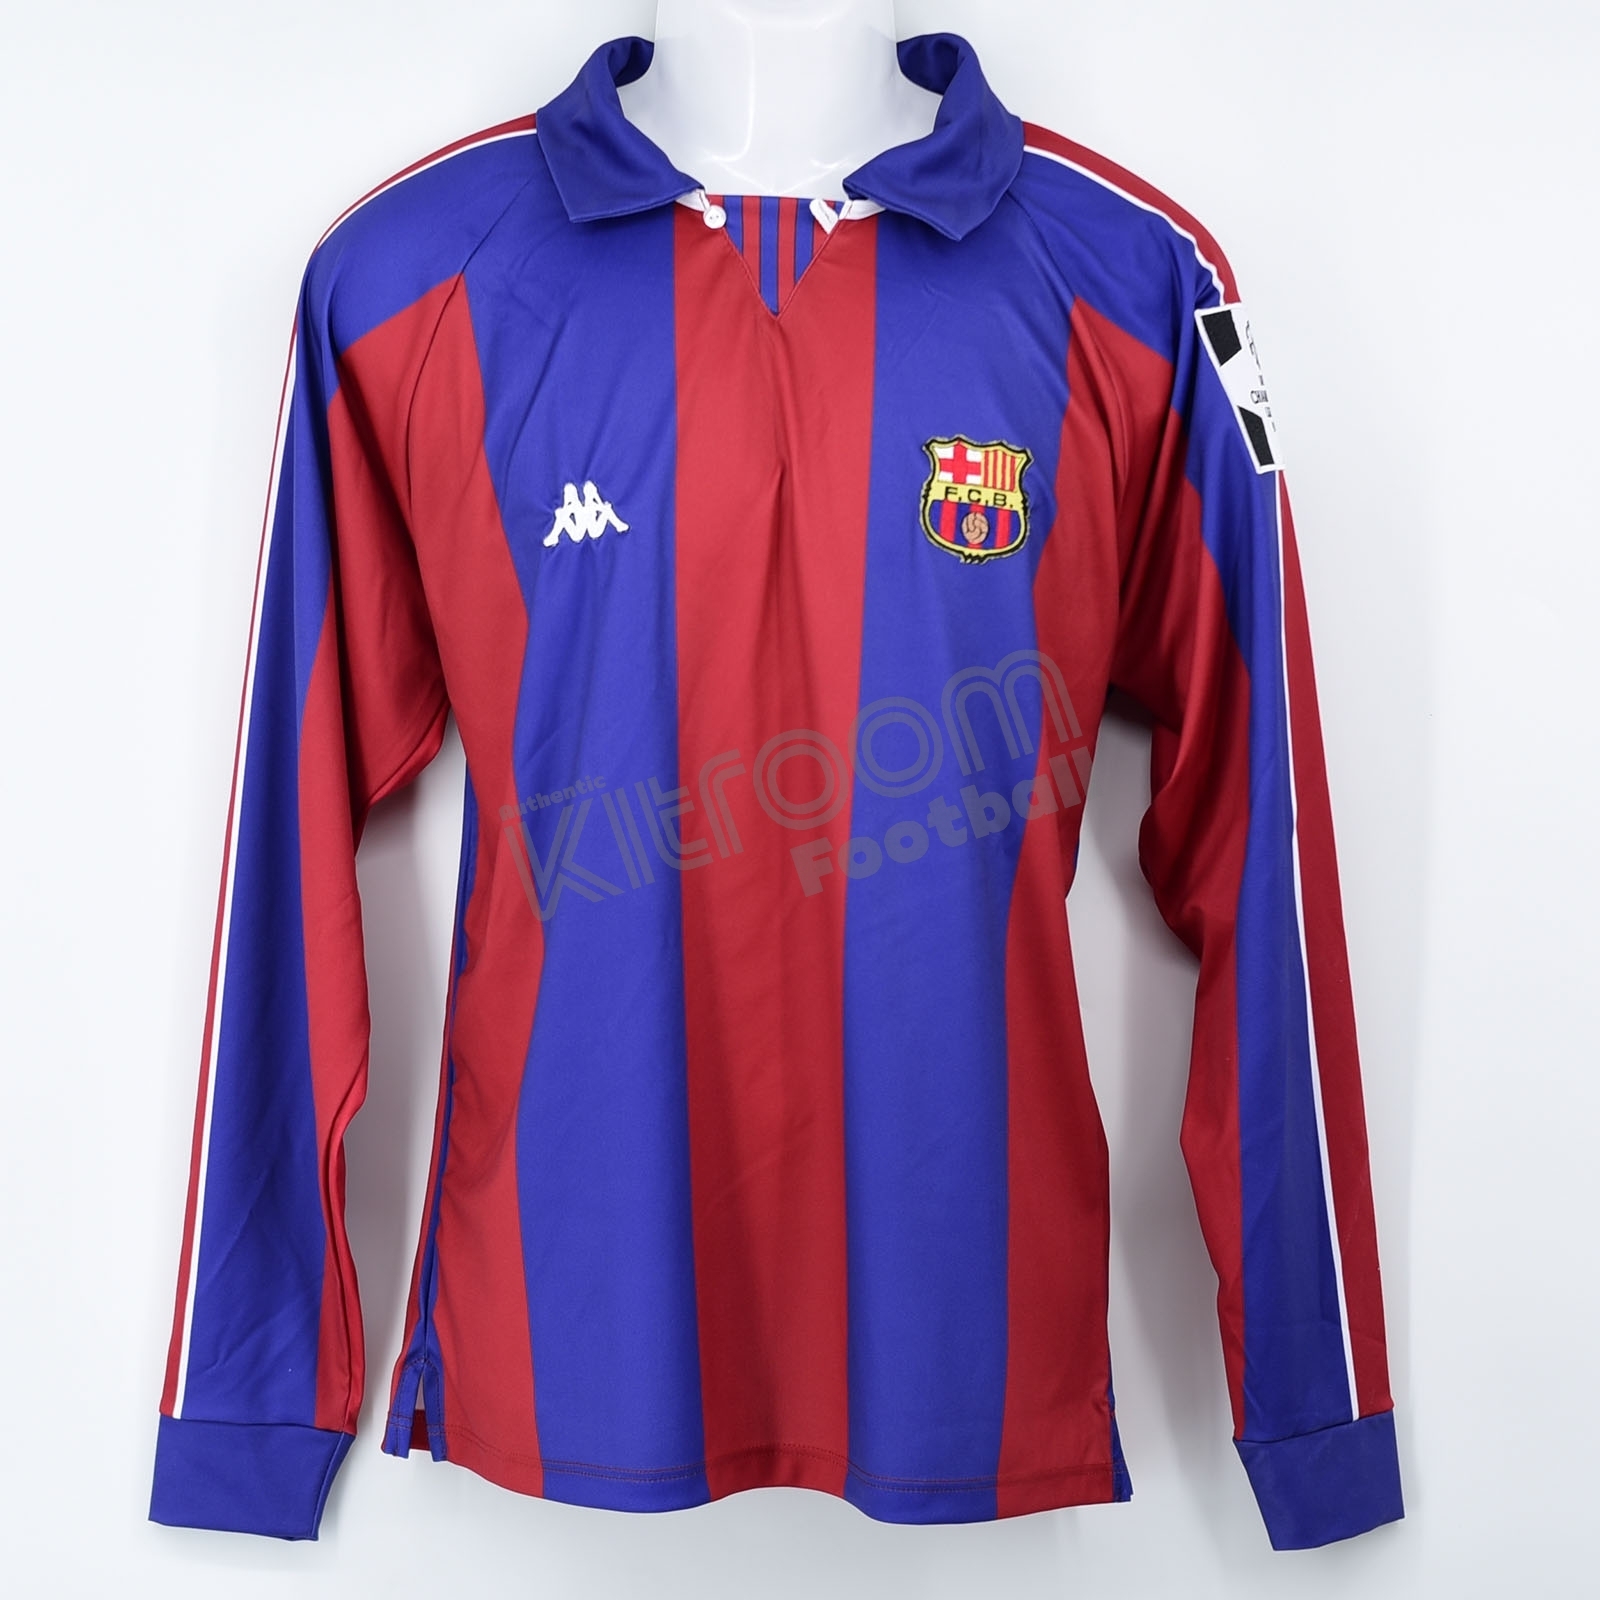 Camiseta/Shirt FC BARCELONA TETRA CAMPIONS de Liga 1994 